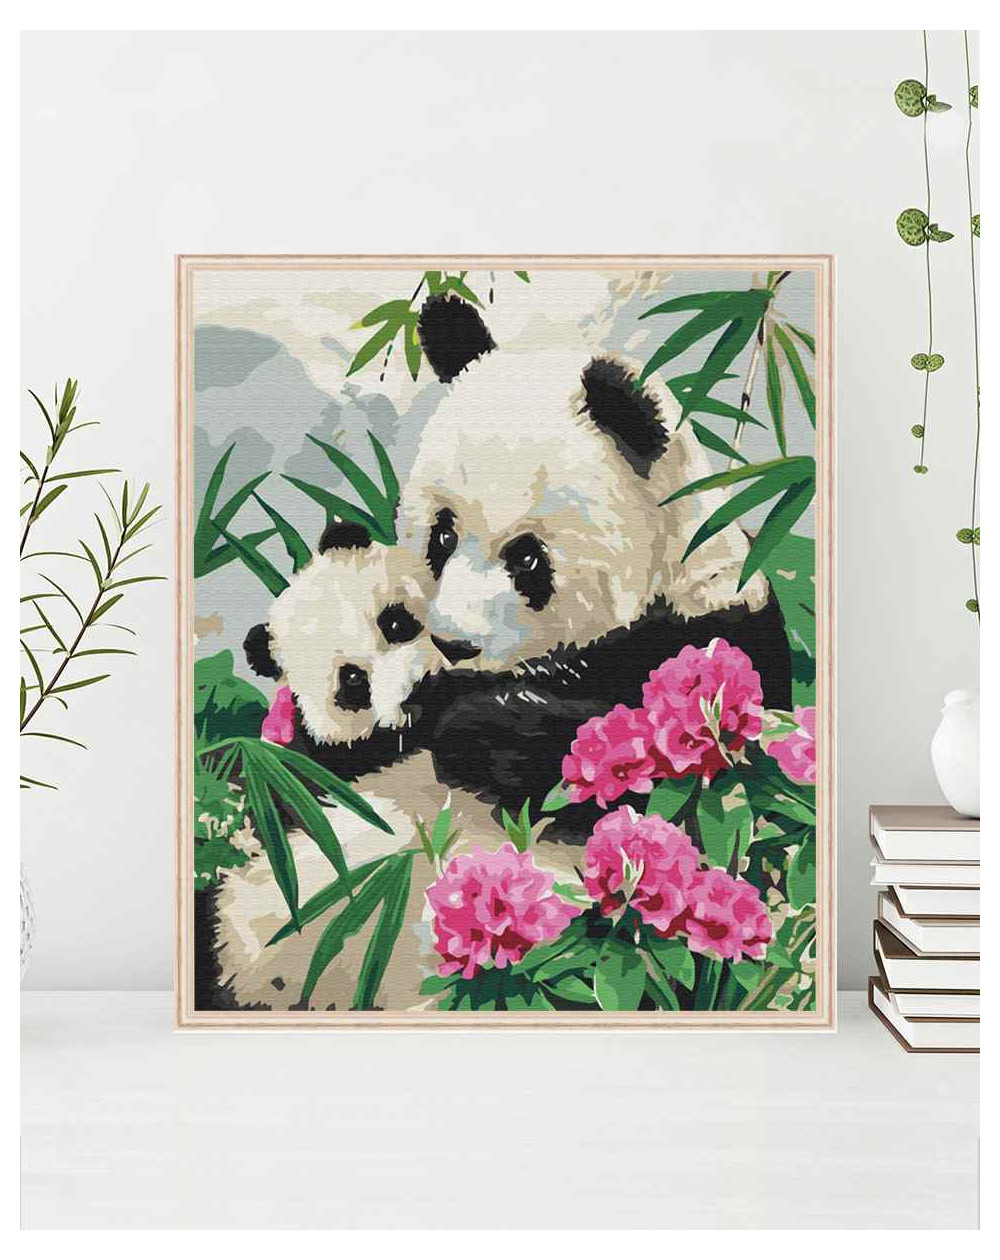 Mama panda z dzieckiem